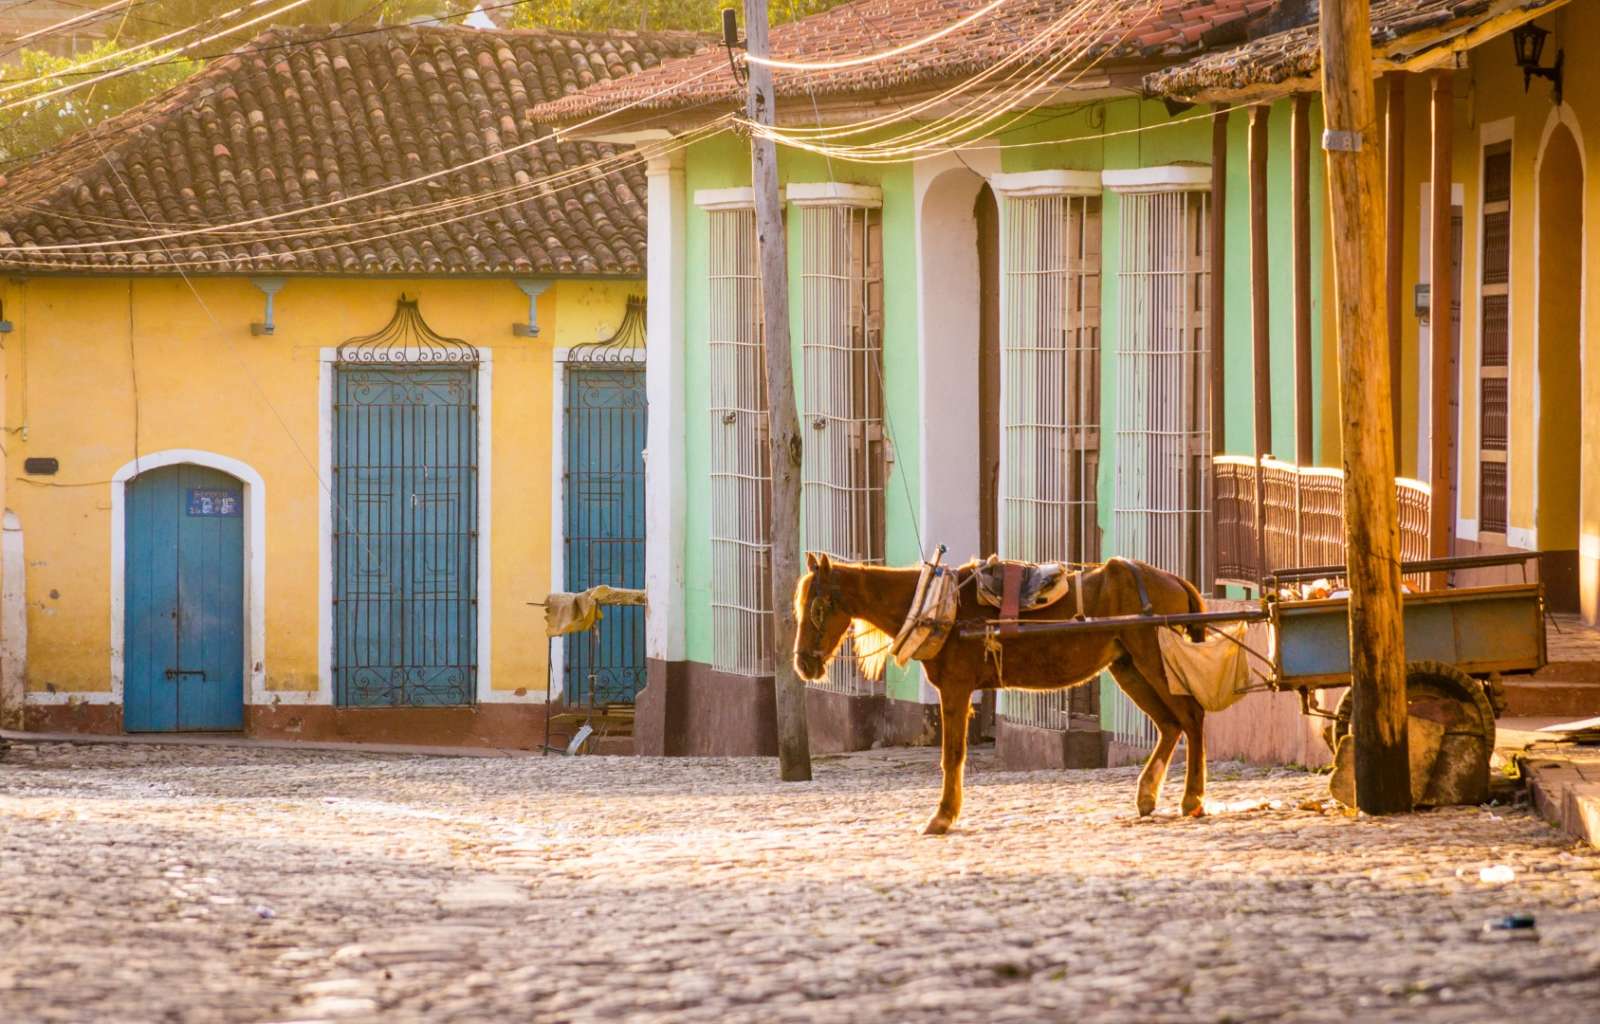 Horse Carriage In Colonial Trinidad, Cuba